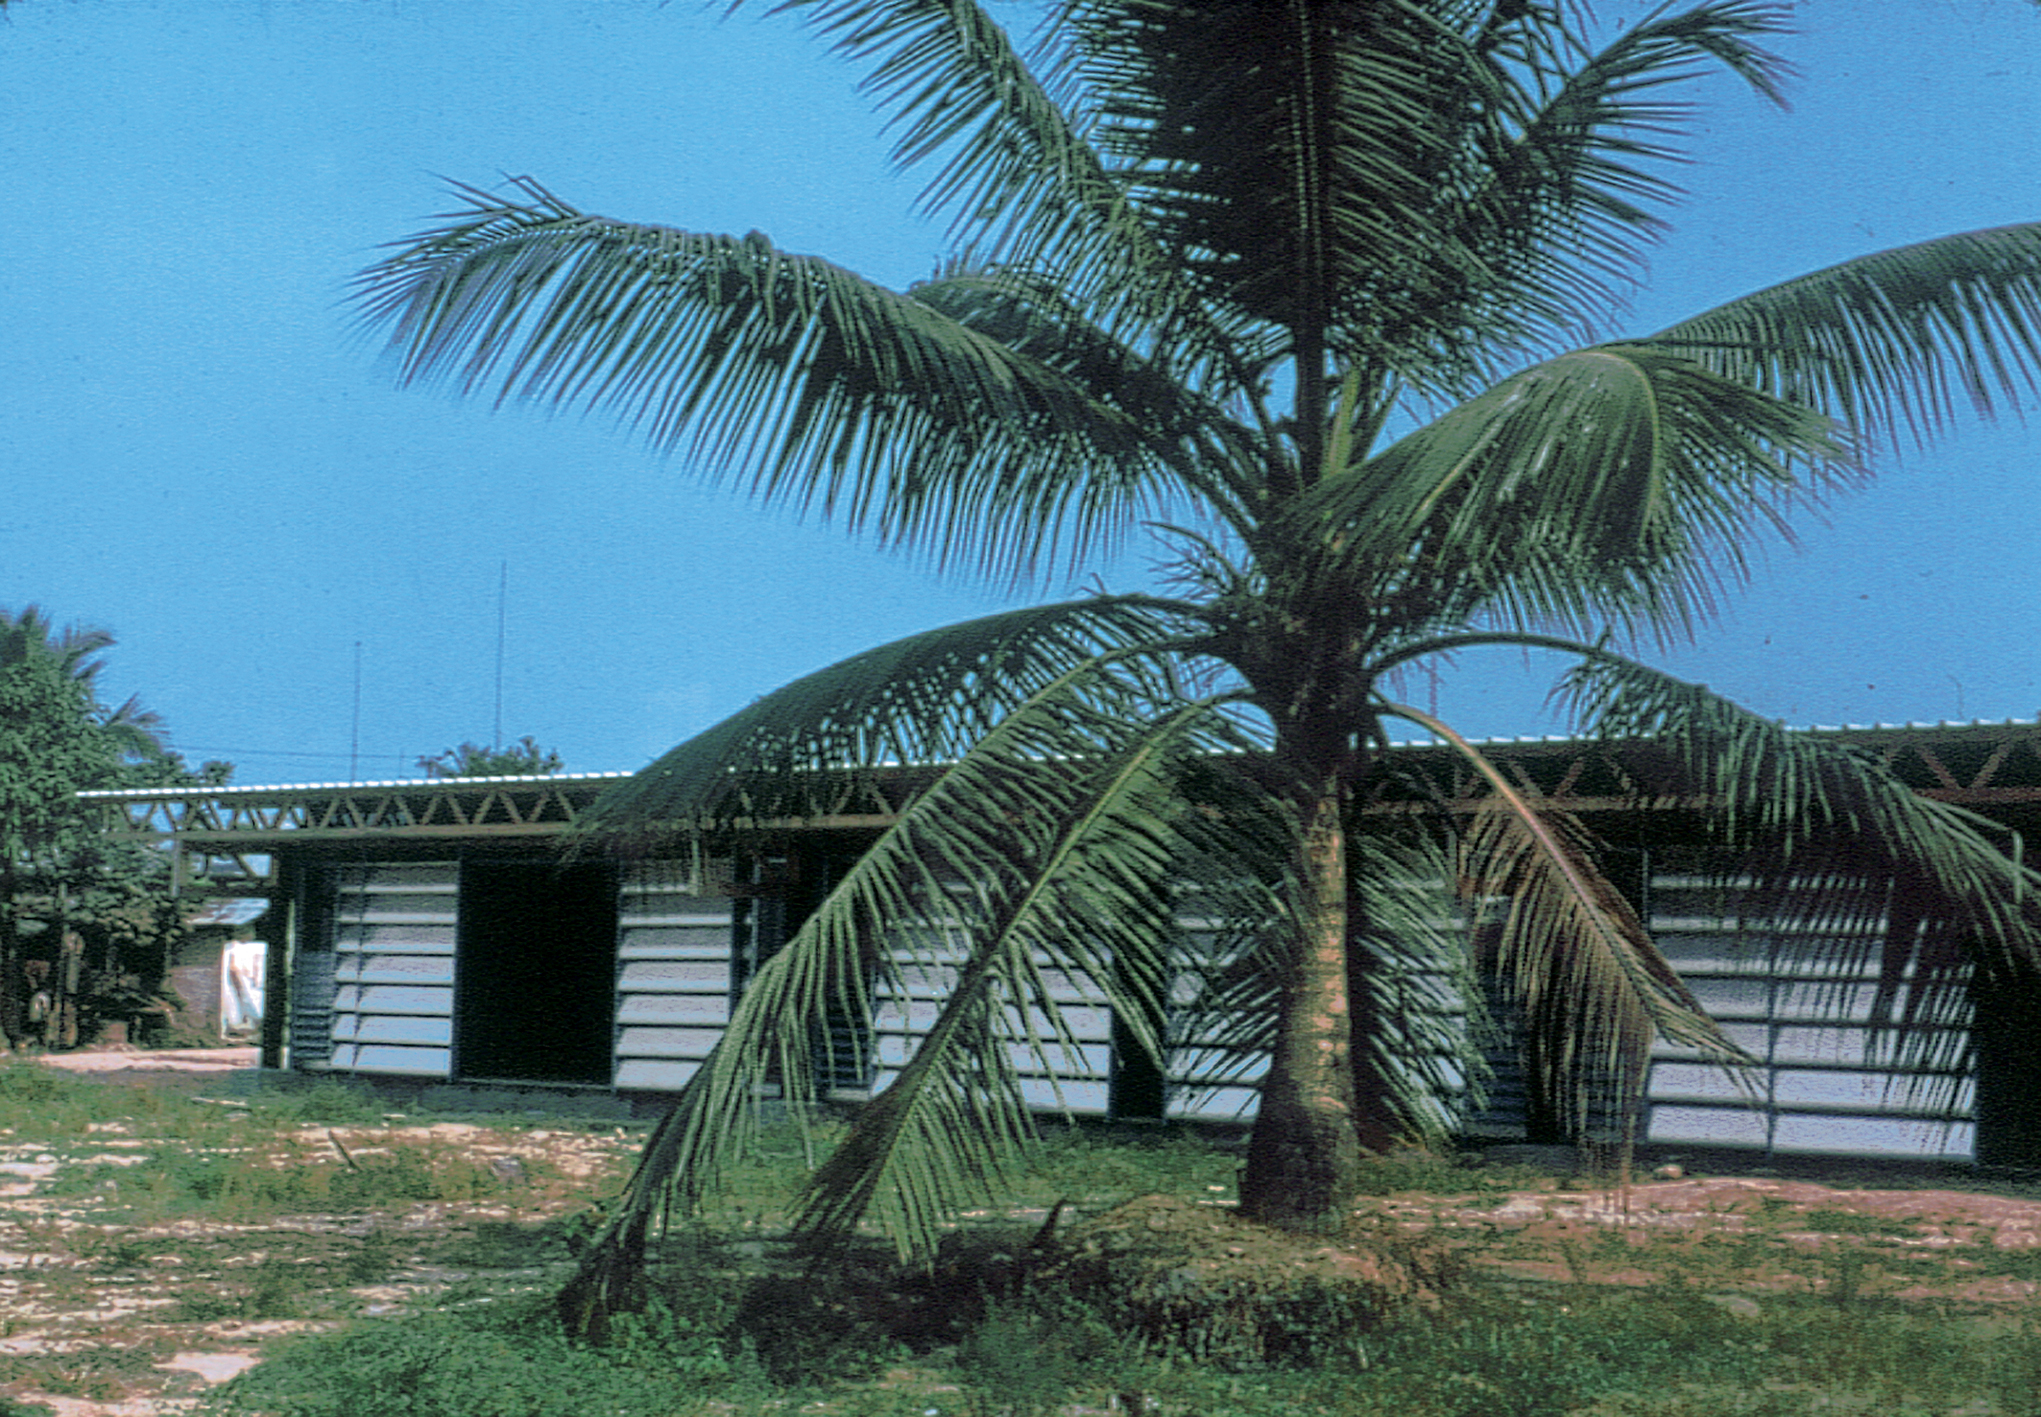 Écoles industrialisées du Cameroun et logements de fonction (Atelier LWD Lagneau, Weill, Dimitrijevic, arch. 1964). Façades brise-soleil conçues par Jean Prouvé.